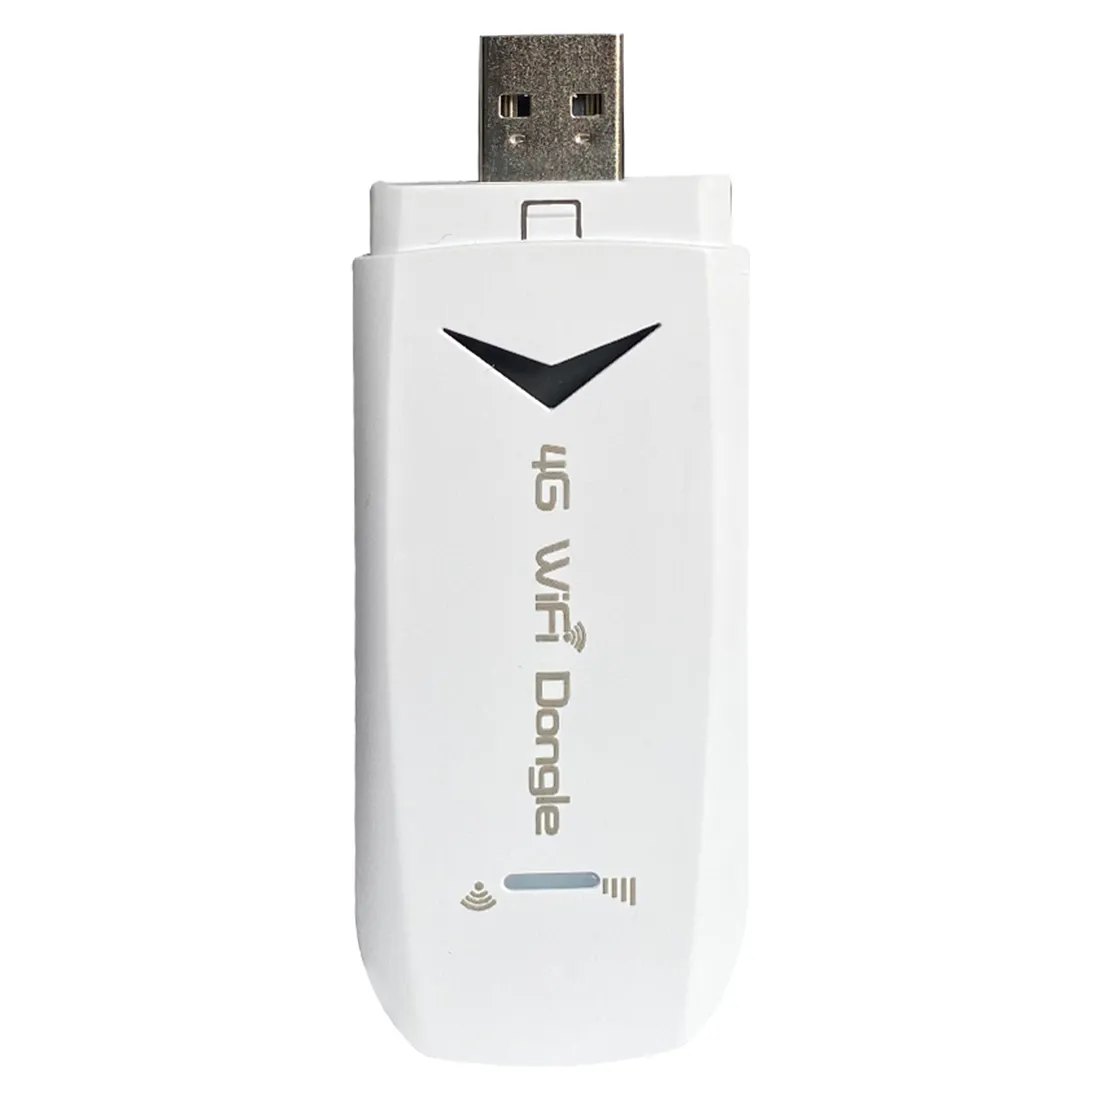 ดองเกิล USB 4G Wifi 150Mbps,ดองเกิลโมเด็ม Wifi แบบพกพาเราเตอร์ใส่ซิมการ์ด USB Wifi สติ๊ก